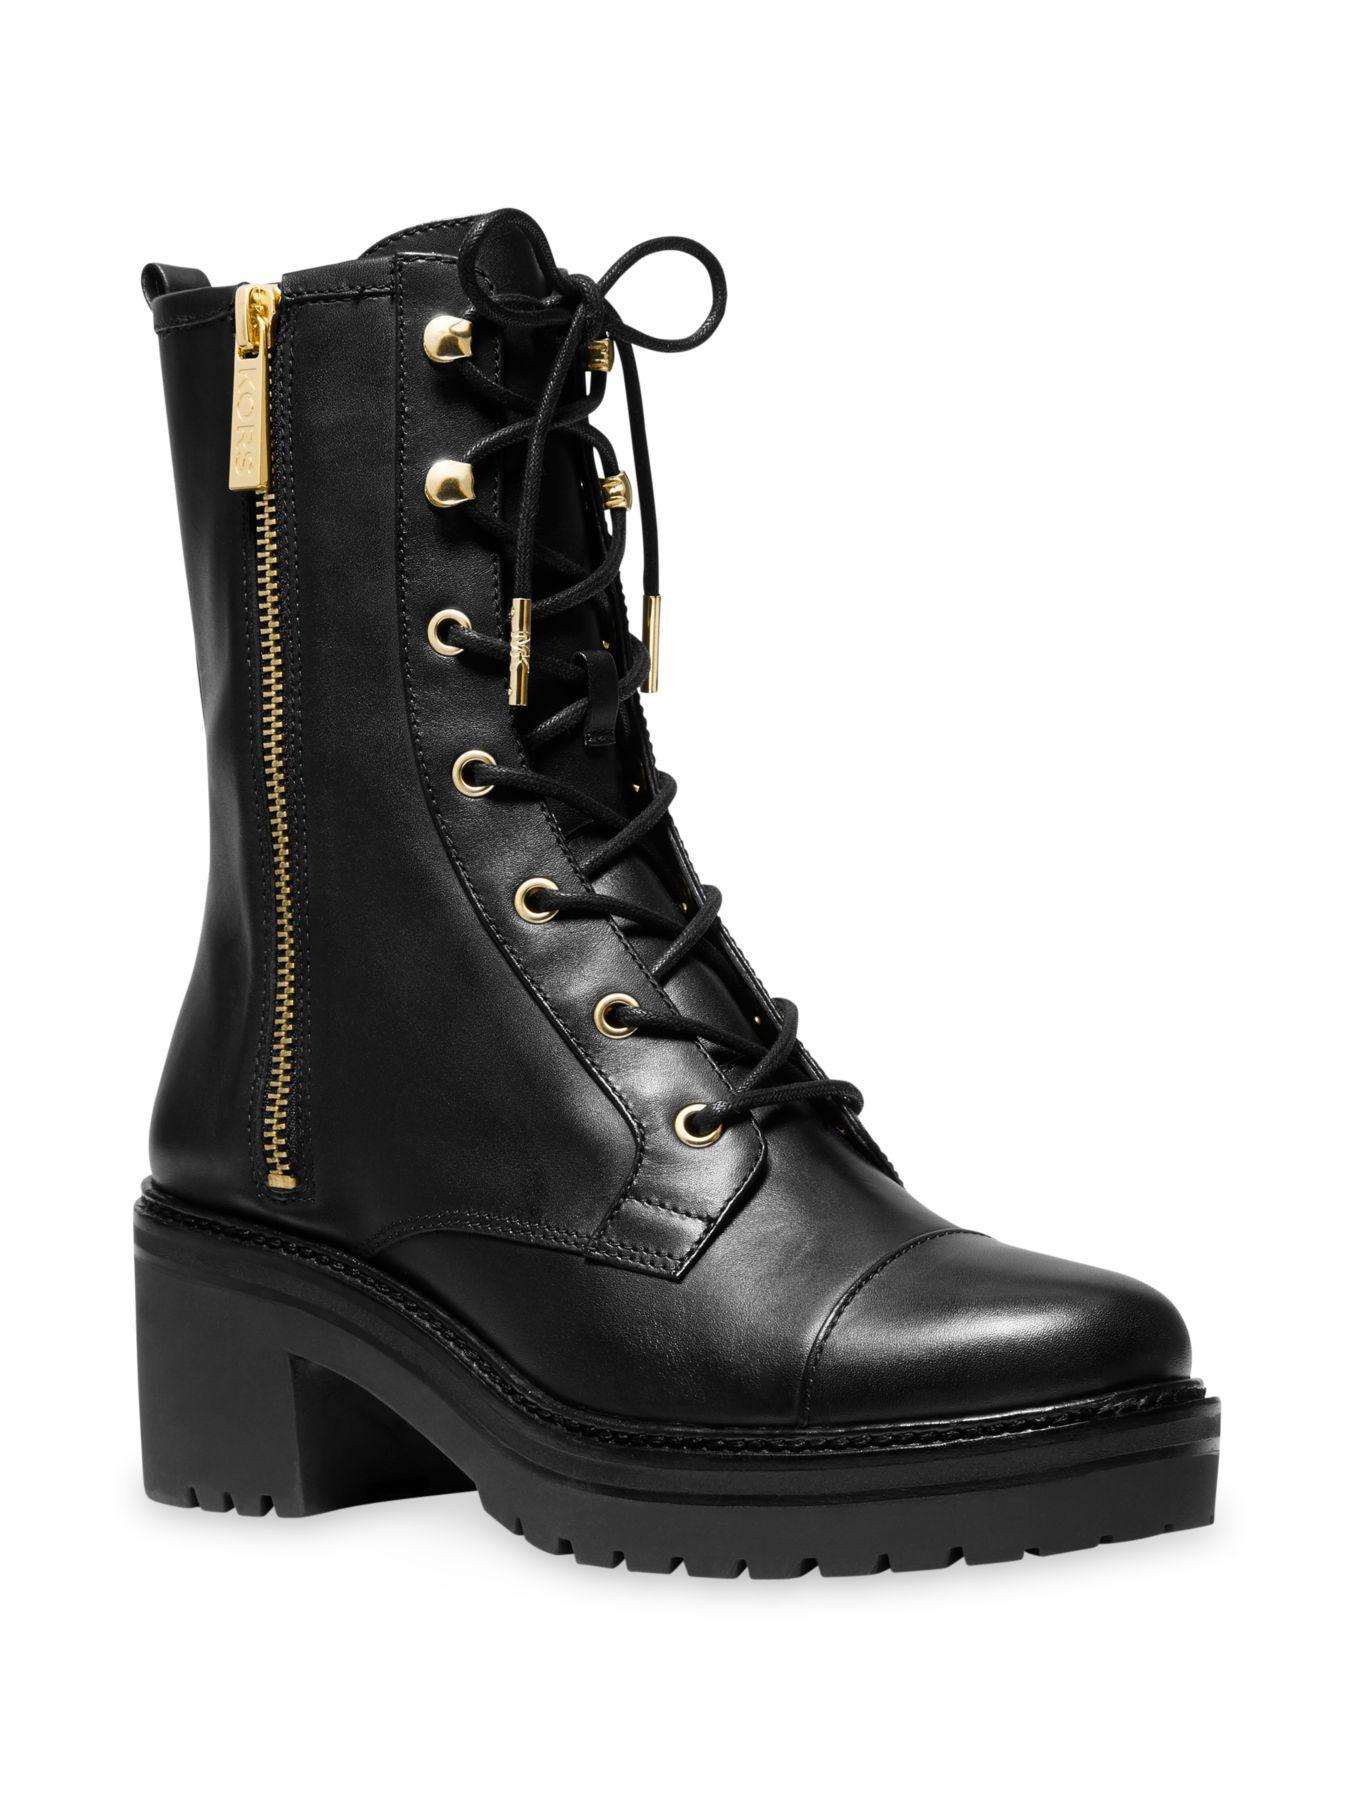 mk combat boots